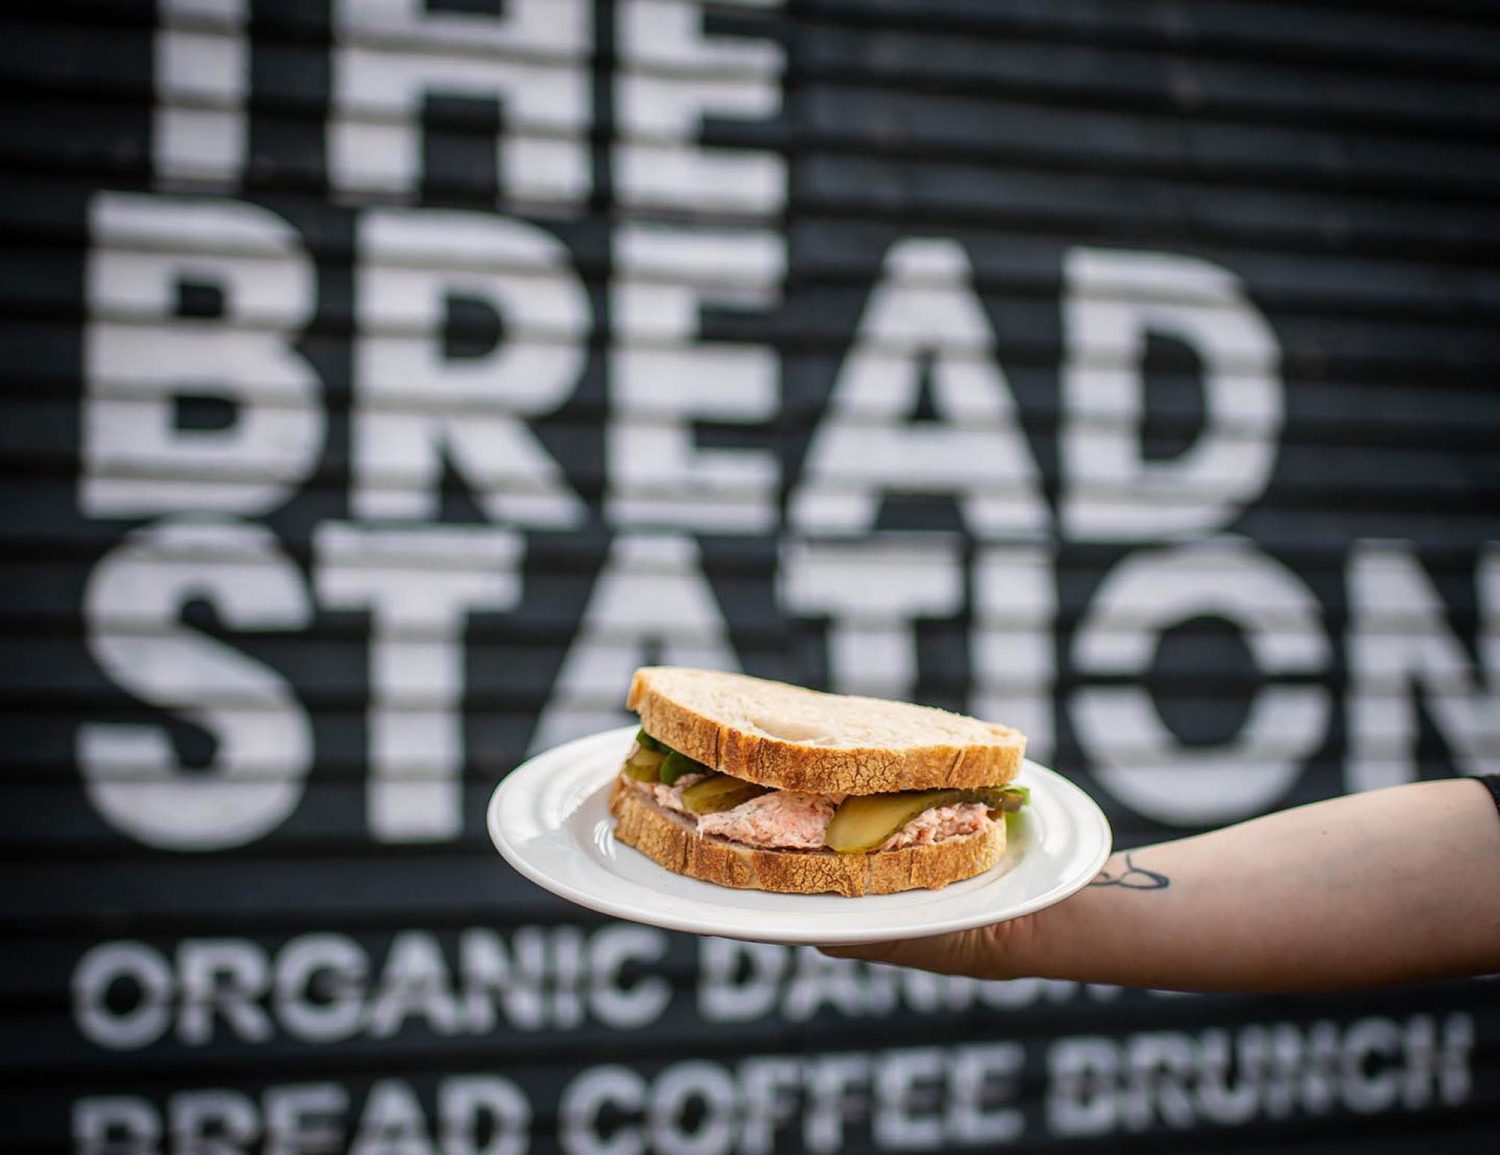 Sandwich from The Bread Station in London Fields' Hackney